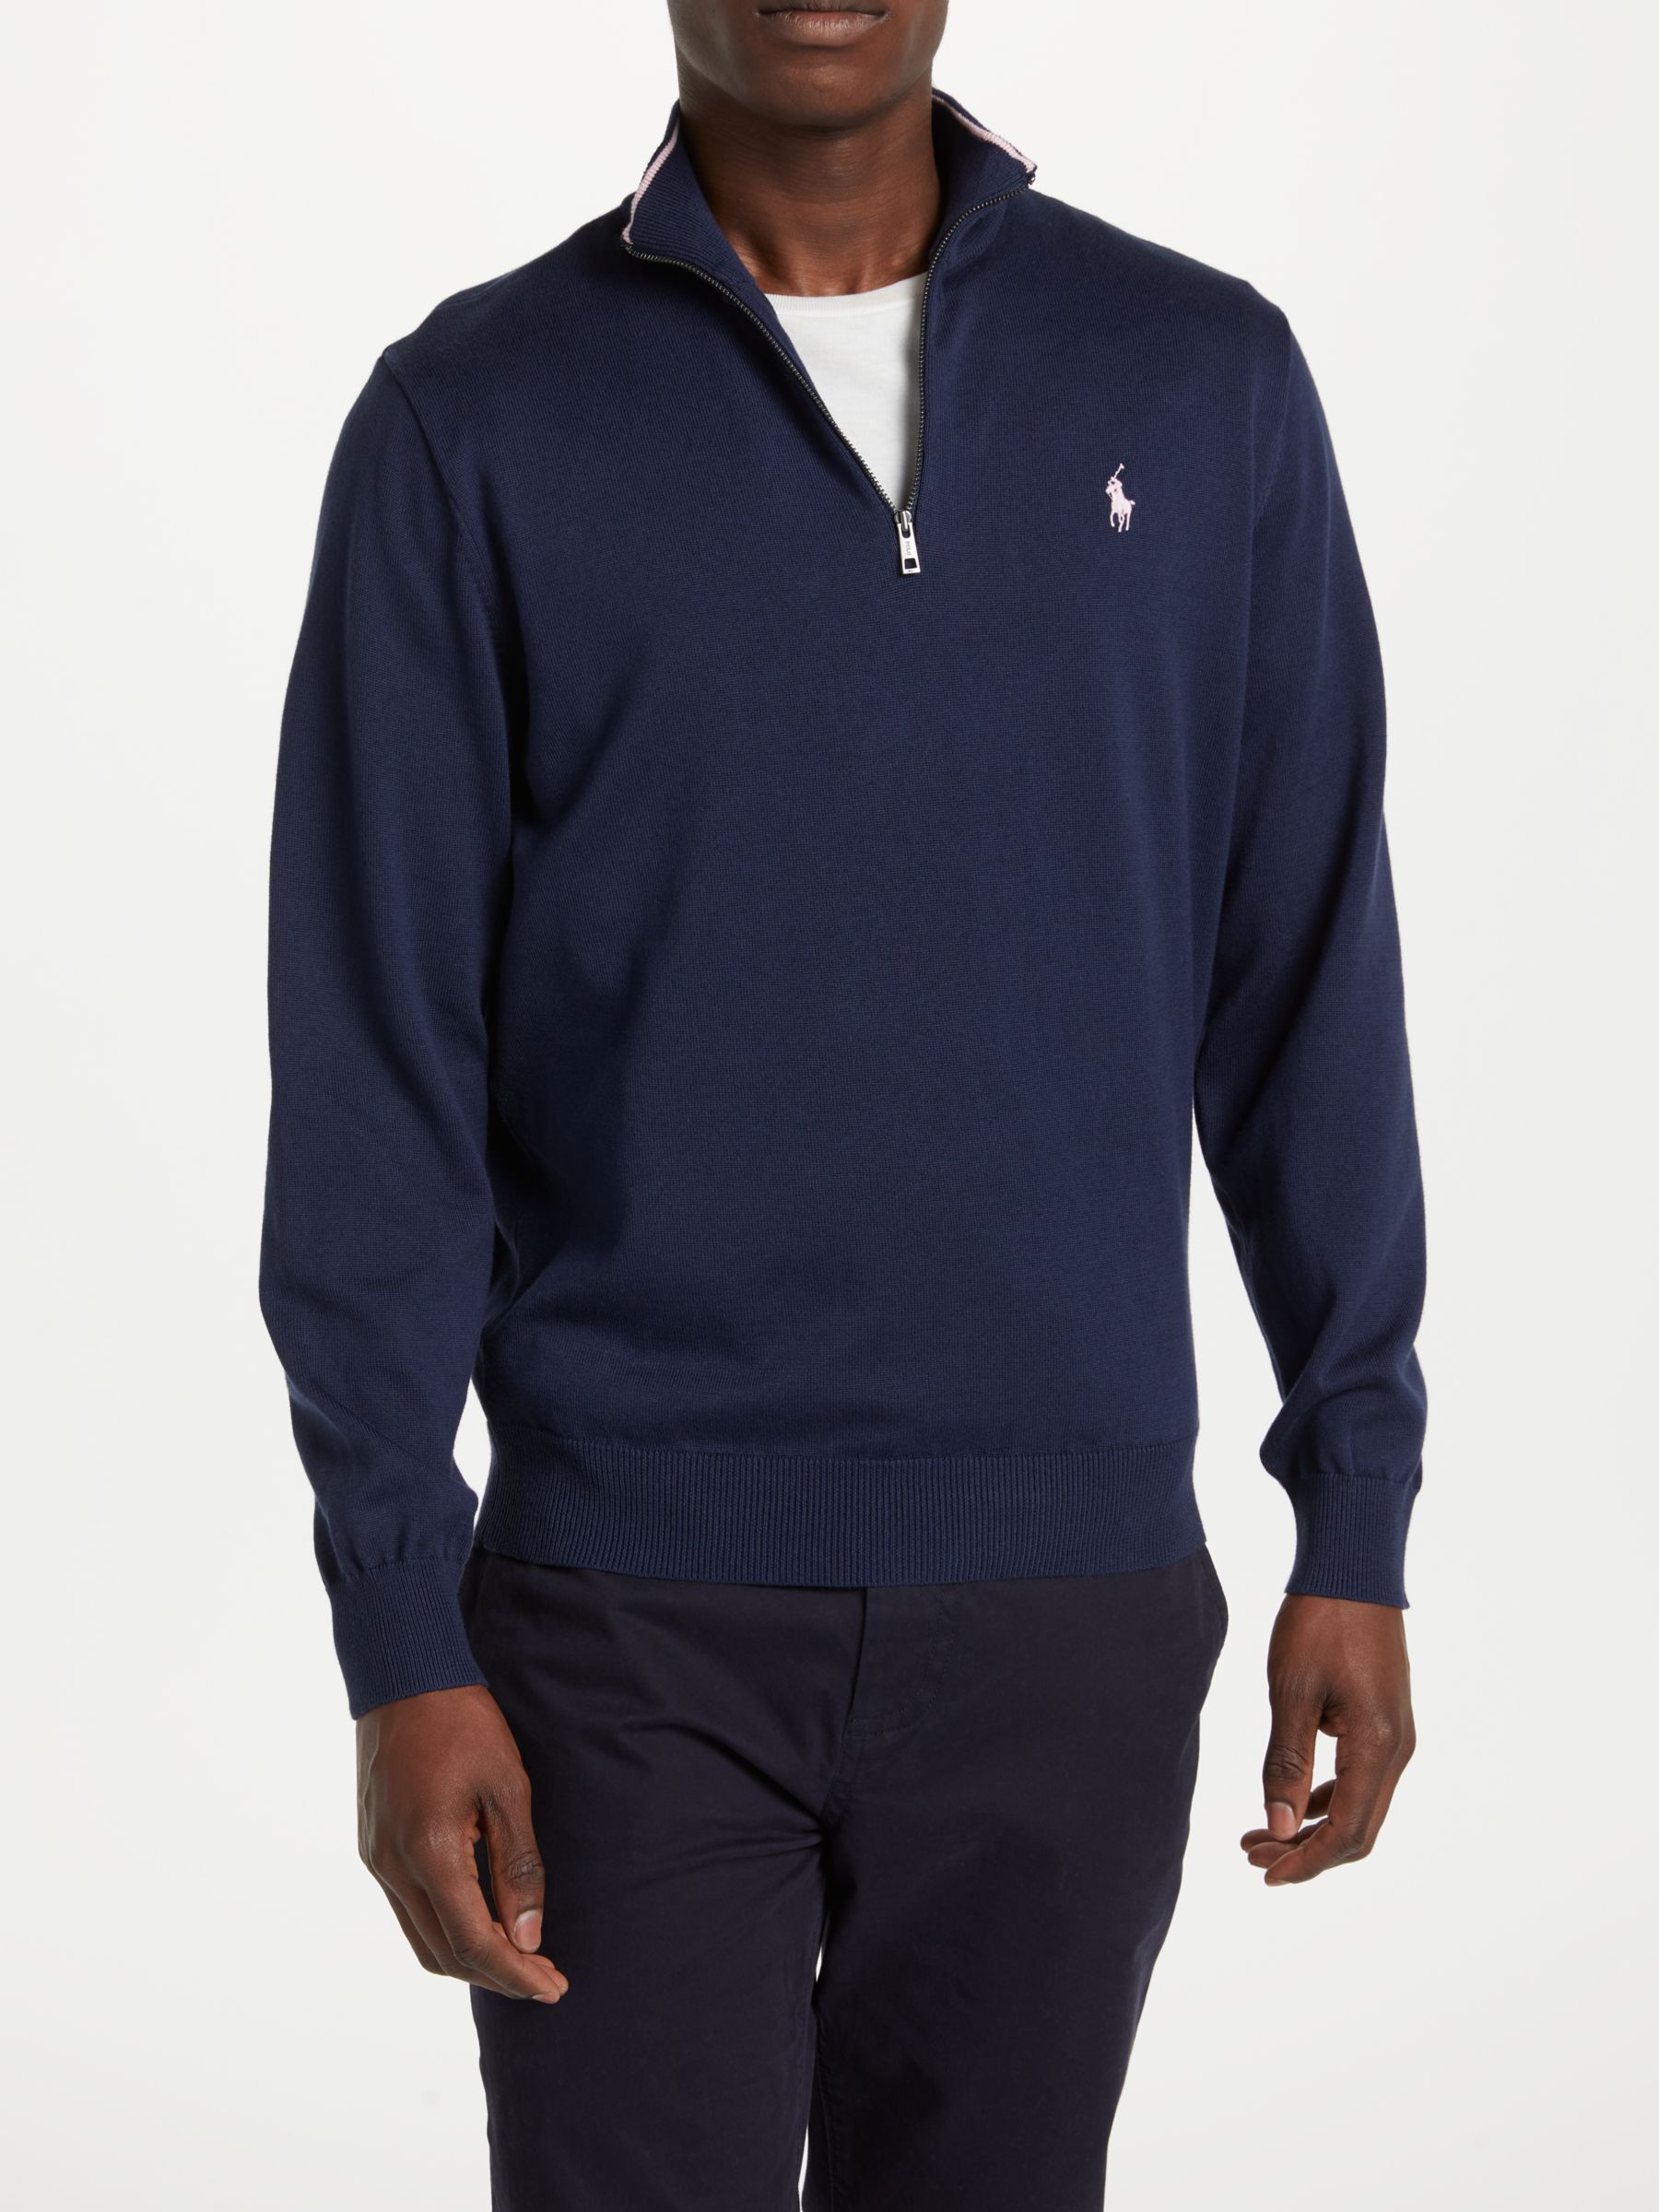 golf half zip sweater